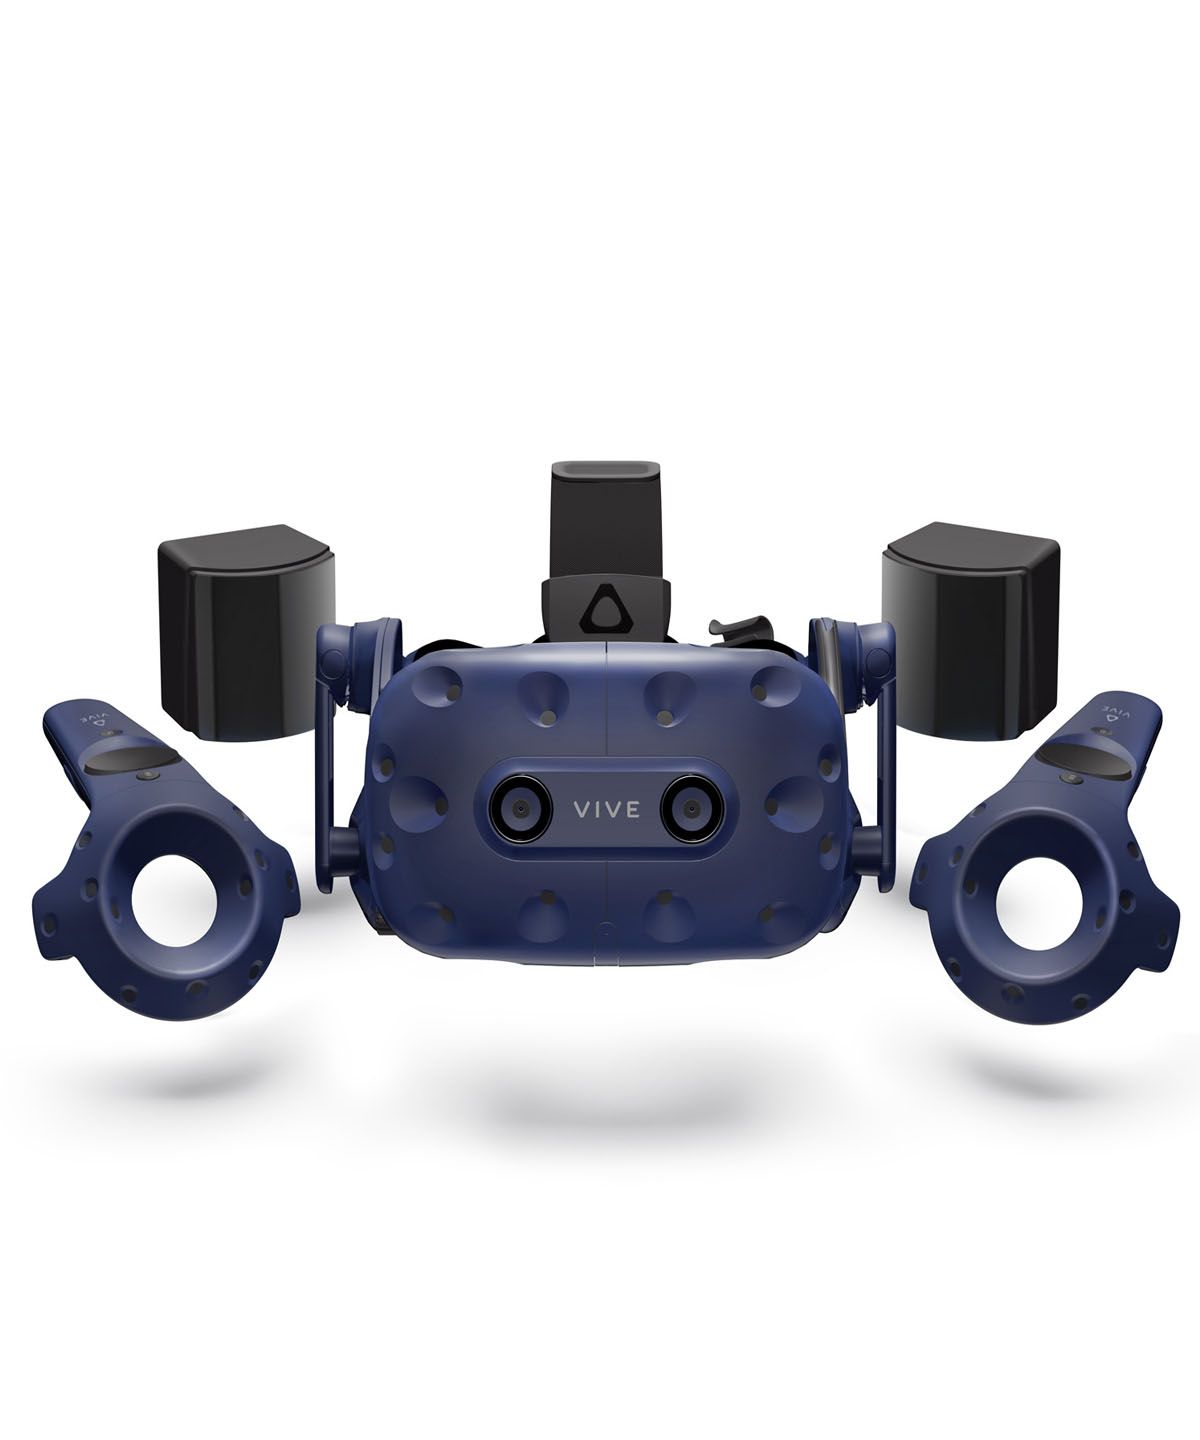 HTC VIVE Pro Virtual Reality System 